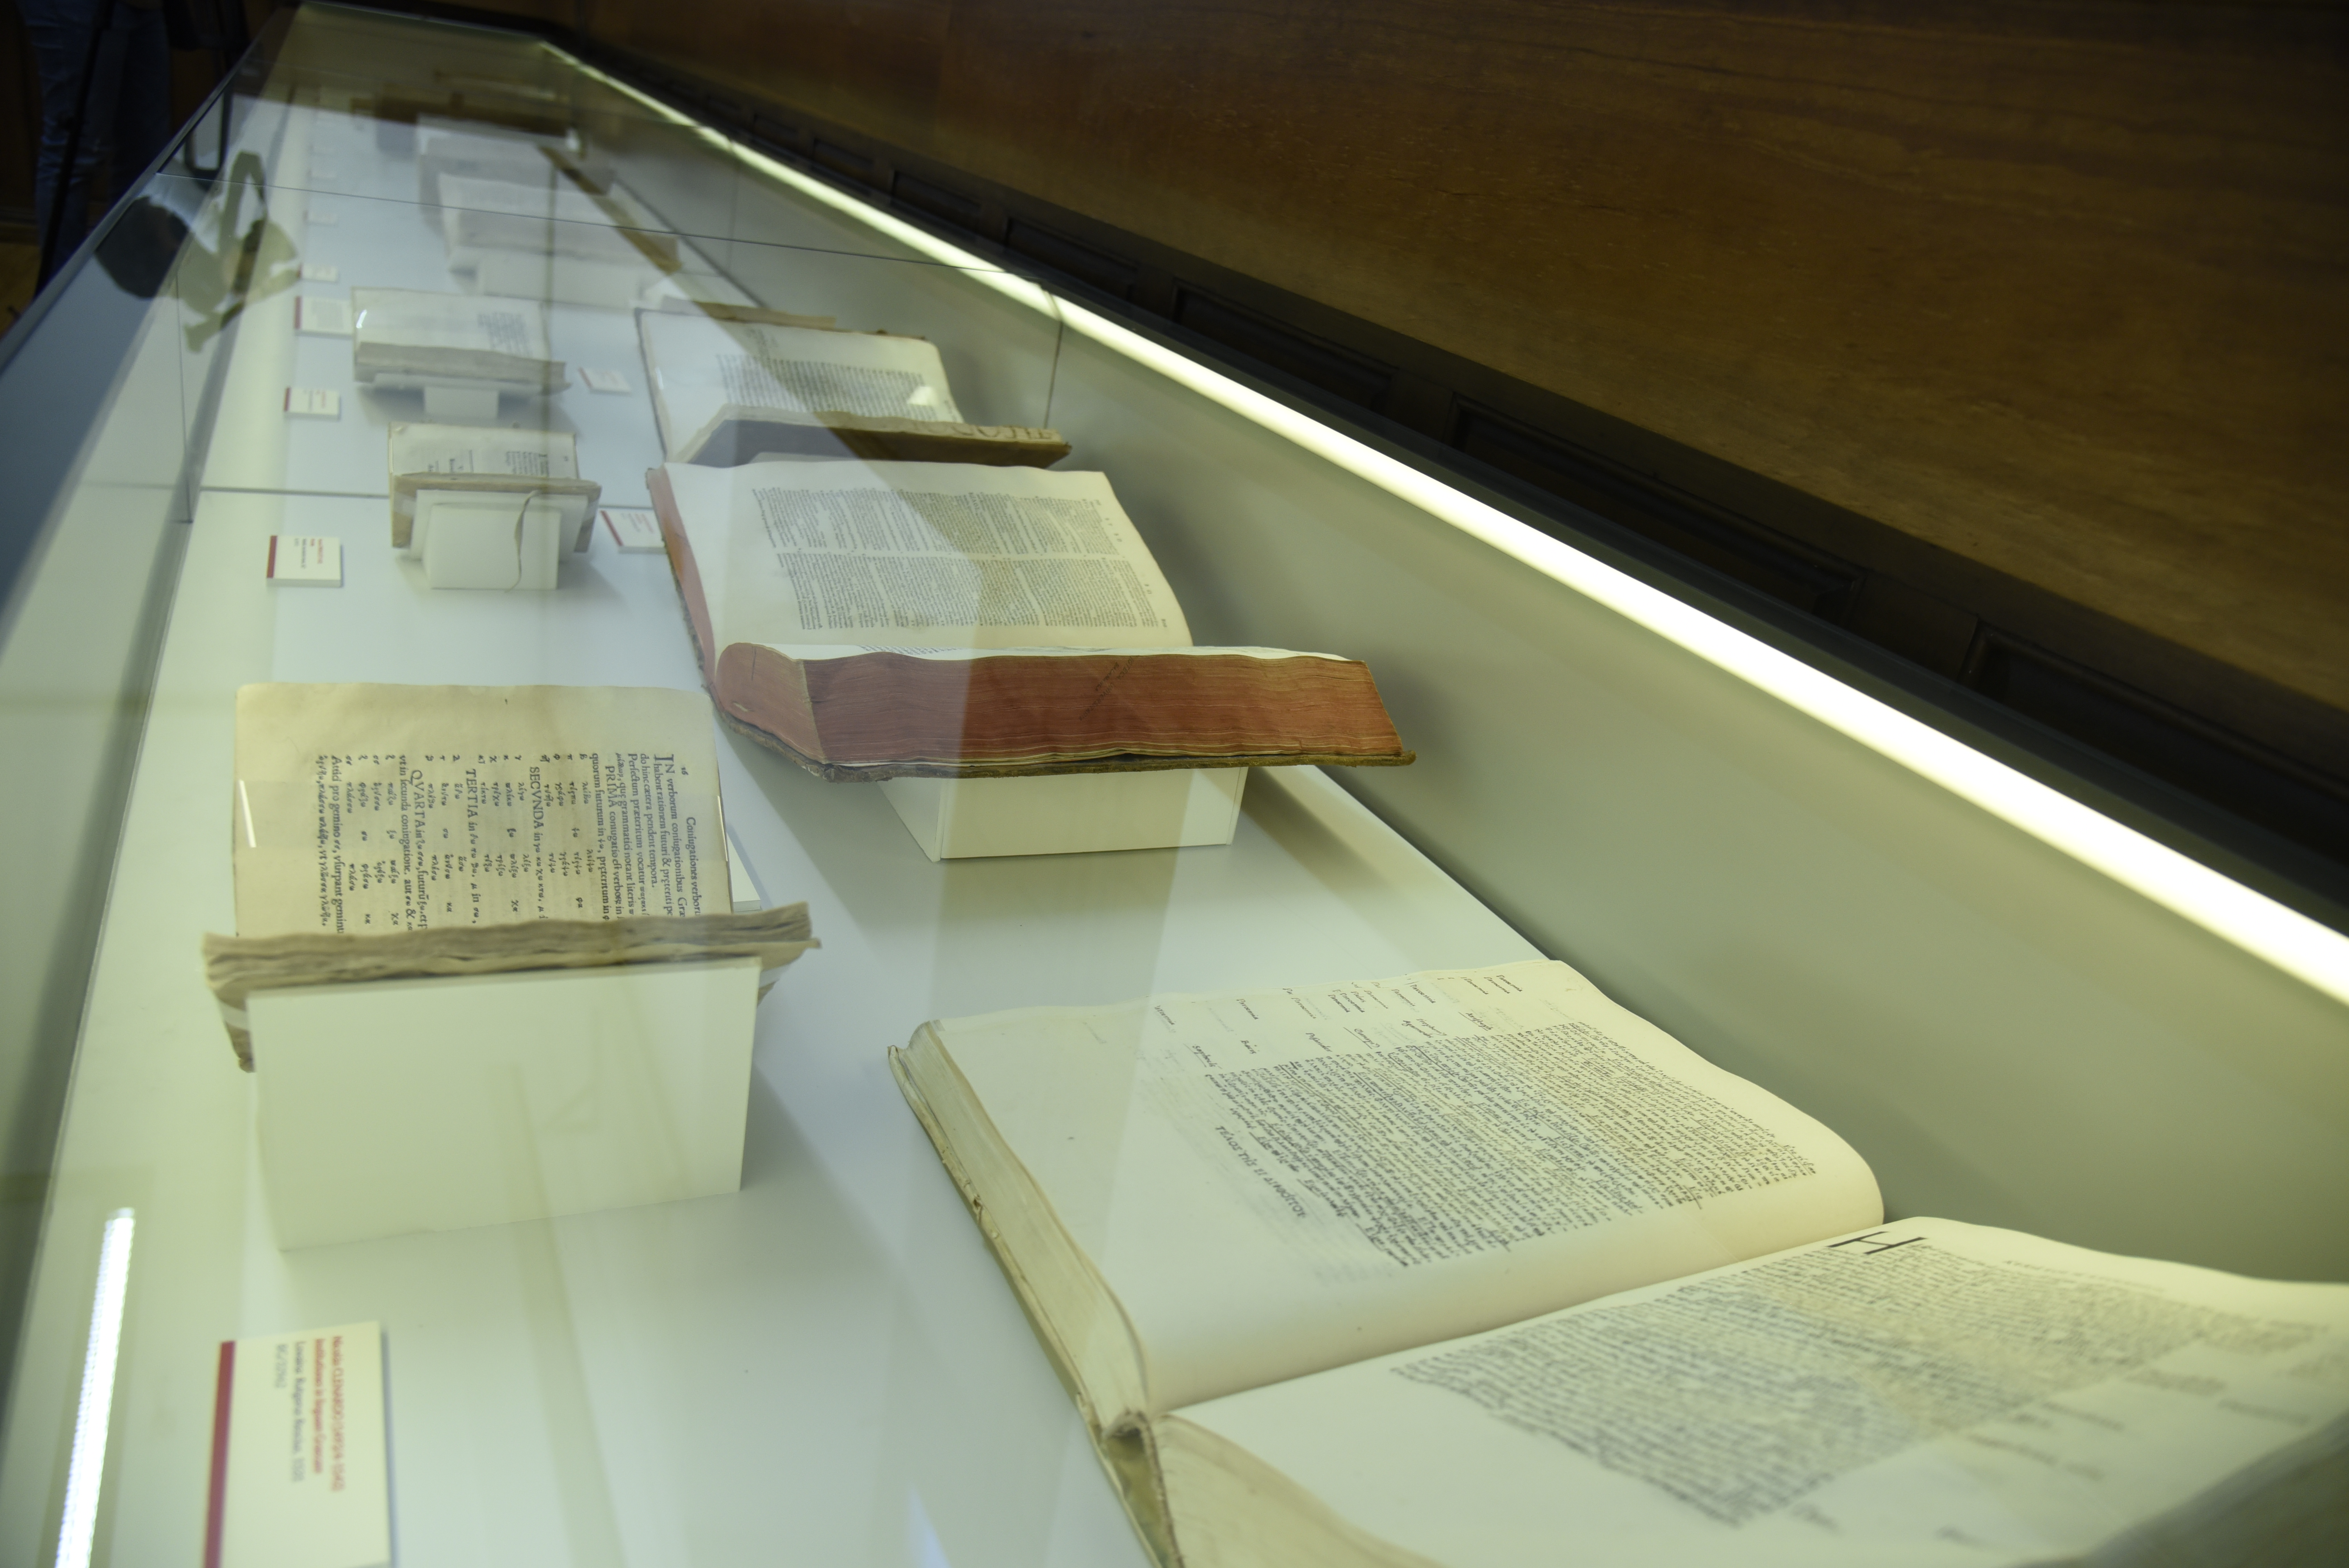 La Universidad de Salamanca abre las puertas a sus gramáticas y diccionarios de las lenguas antiguas con la exposición ‘Las llaves del conocimiento’ 